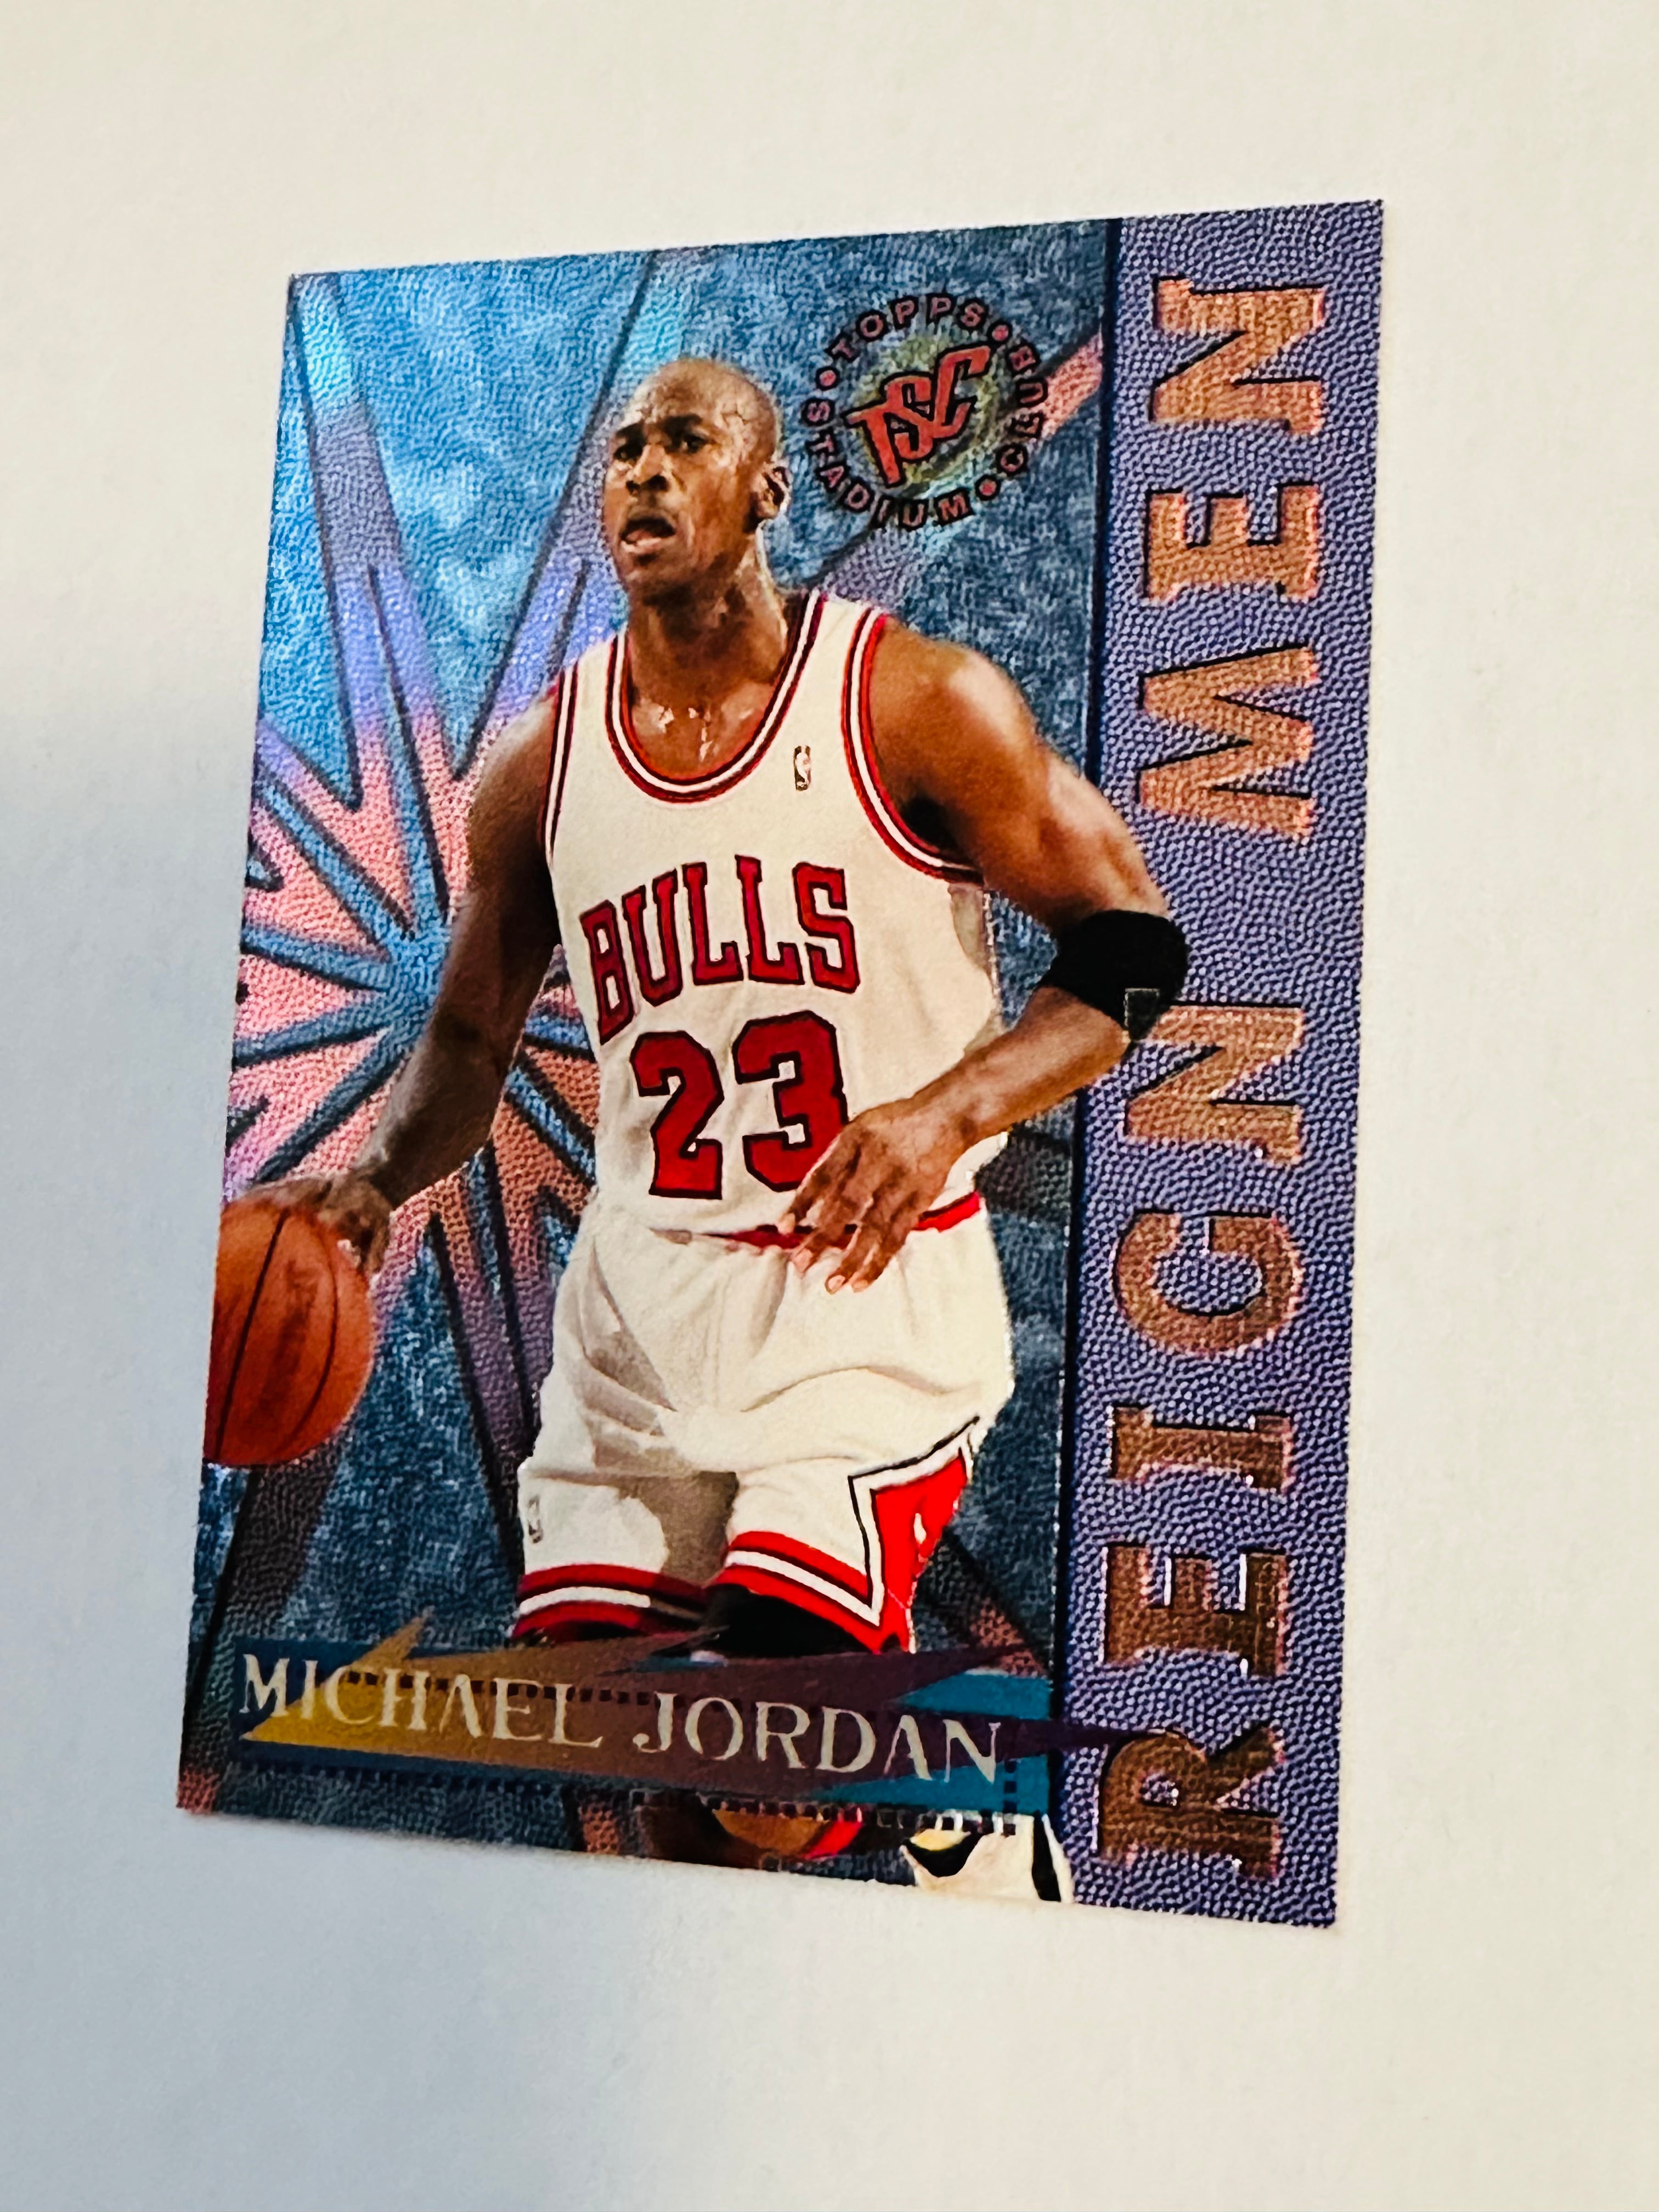 Michael Jordan NBA legend topps basketball foil insert card, 1996